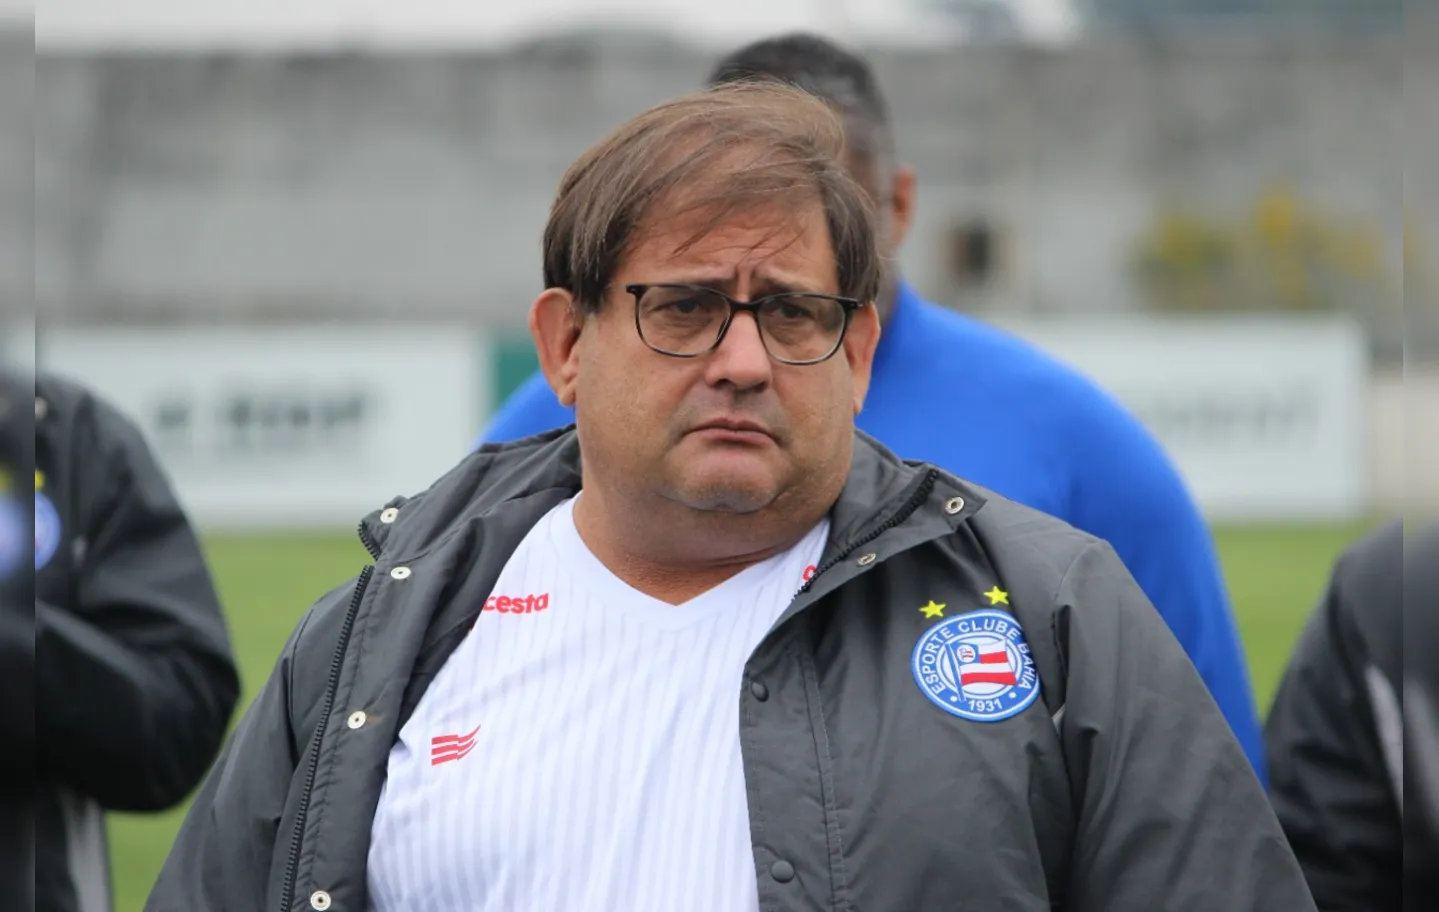 A confiança da torcida em cima do retorno do treinador ficou em quase 60% | Foto: Rafael Machaddo | EC Bahia